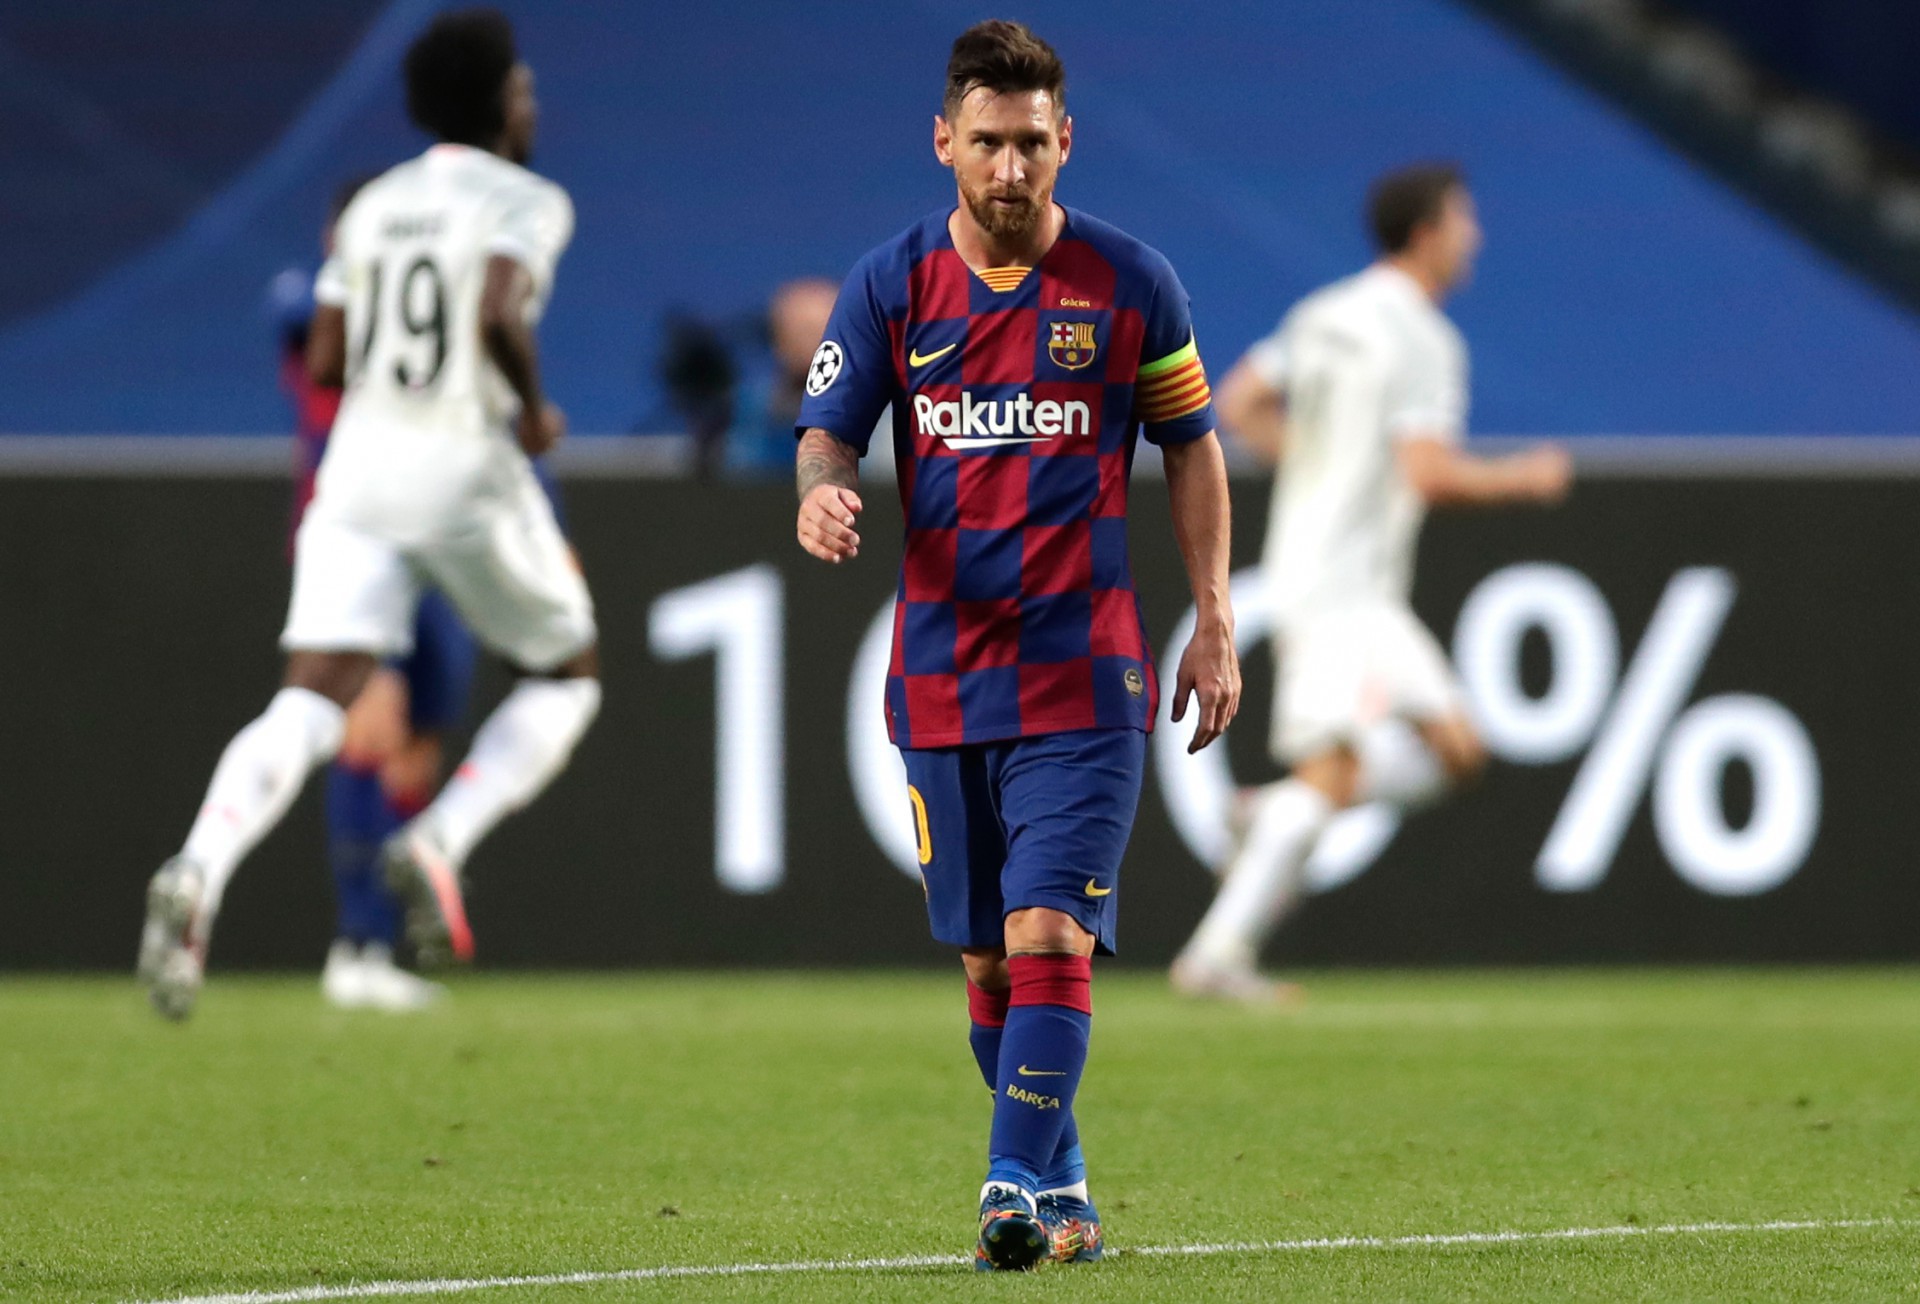 Lionel Messi emitiu um comunicado aos dirigentes pedindo para sair do Barcelona, afirma imprensa espanhola (Foto: Manu Fernandez / AFP)